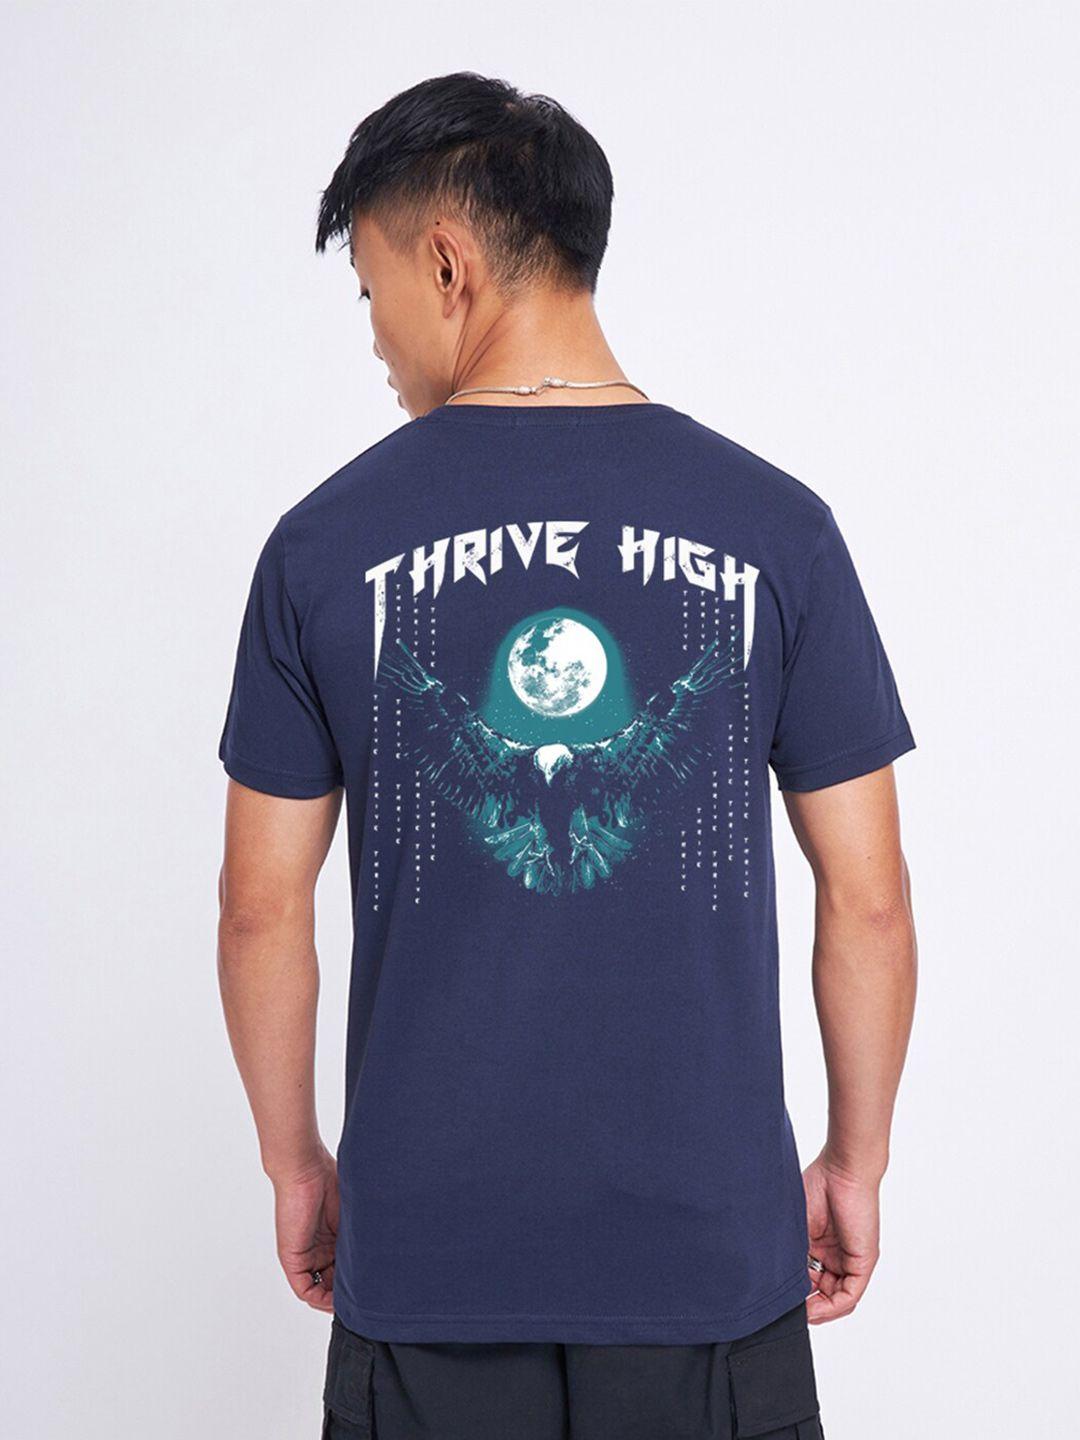 bewakoof thrive high graphic printed t-shirt